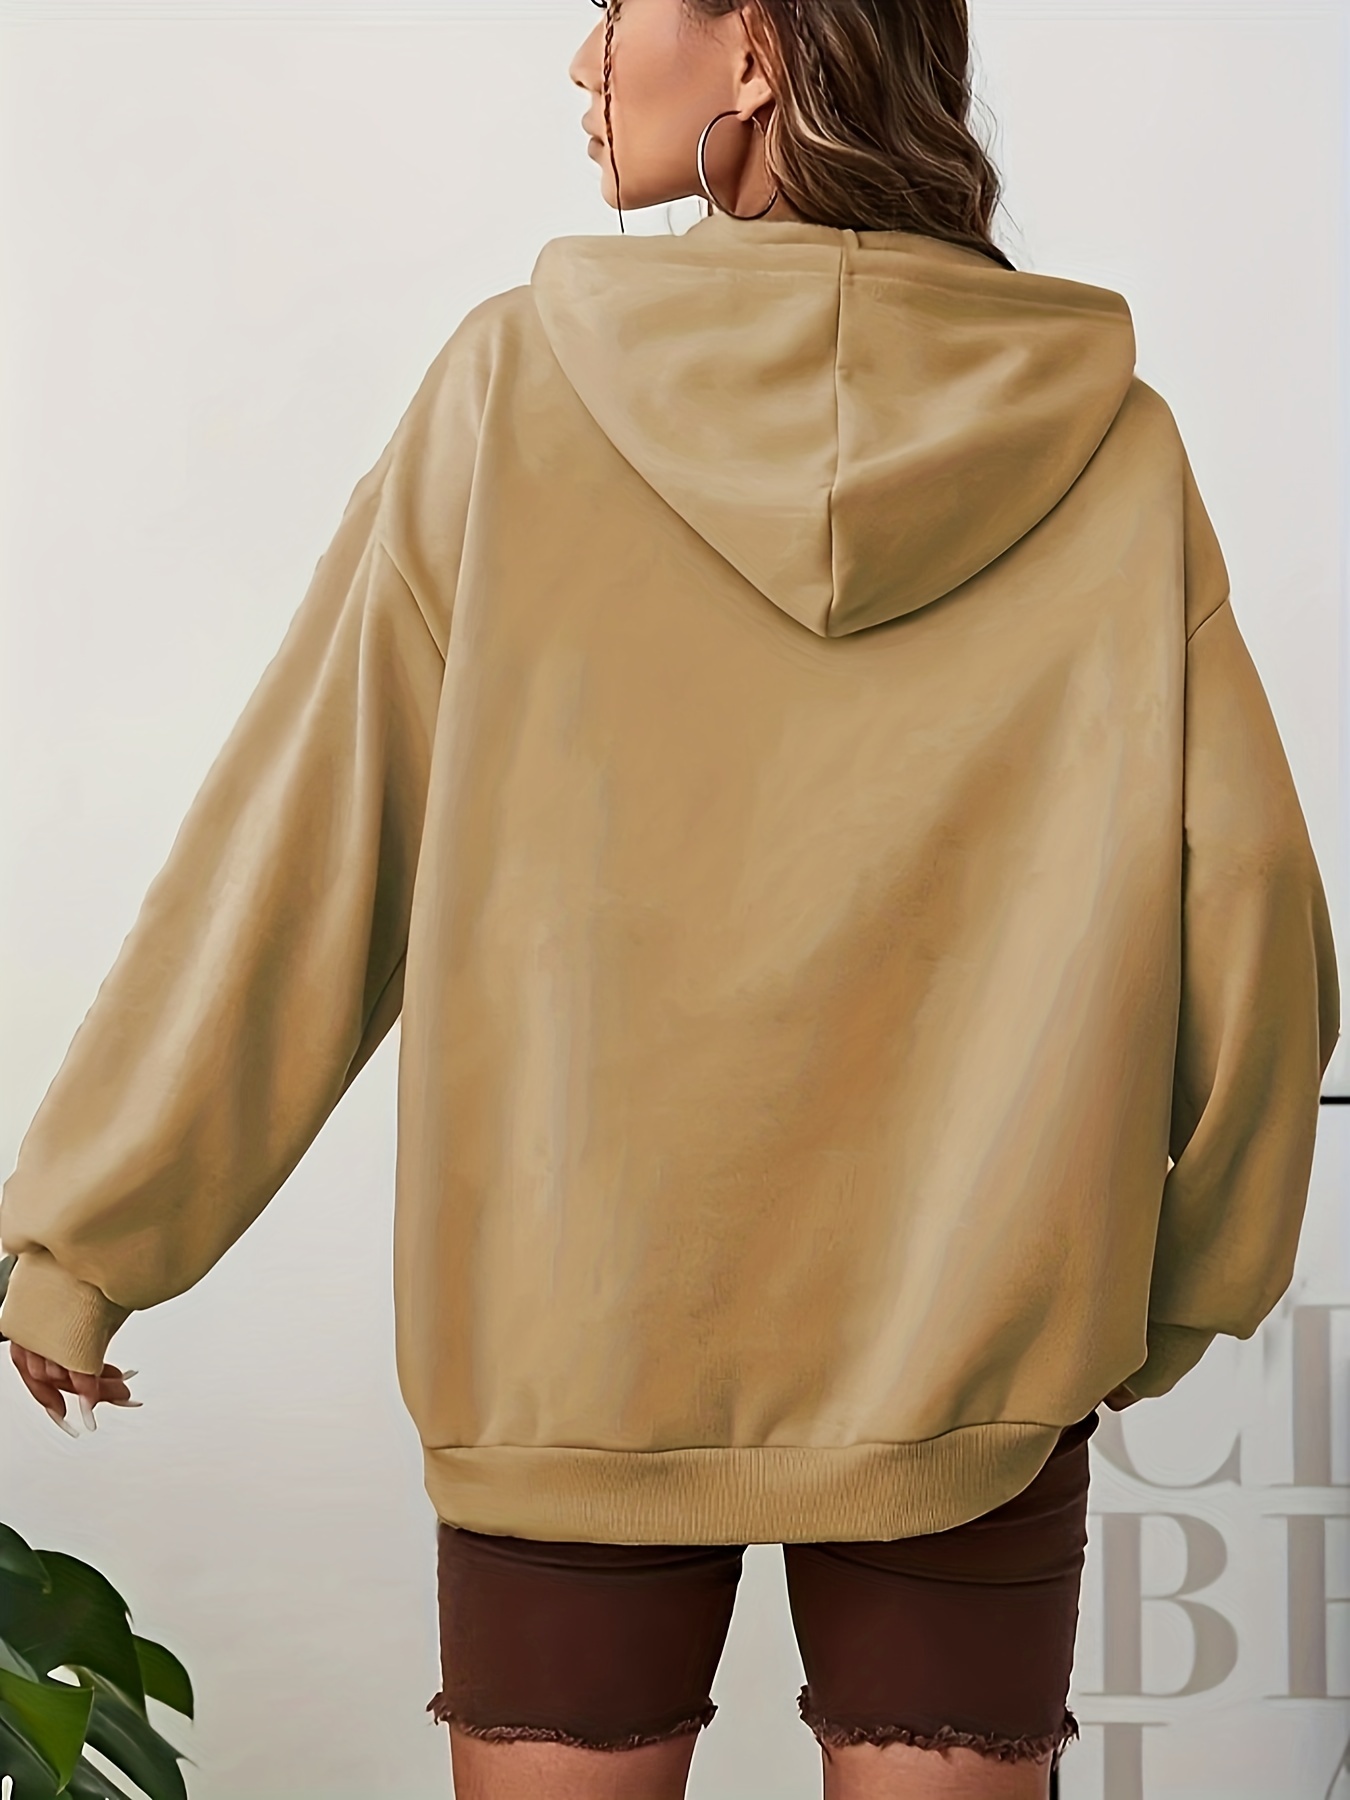 Sudadera de bolsillo con capucha de color sólido informal de estilo  caliente de venta caliente de ot Fridja nbo4481